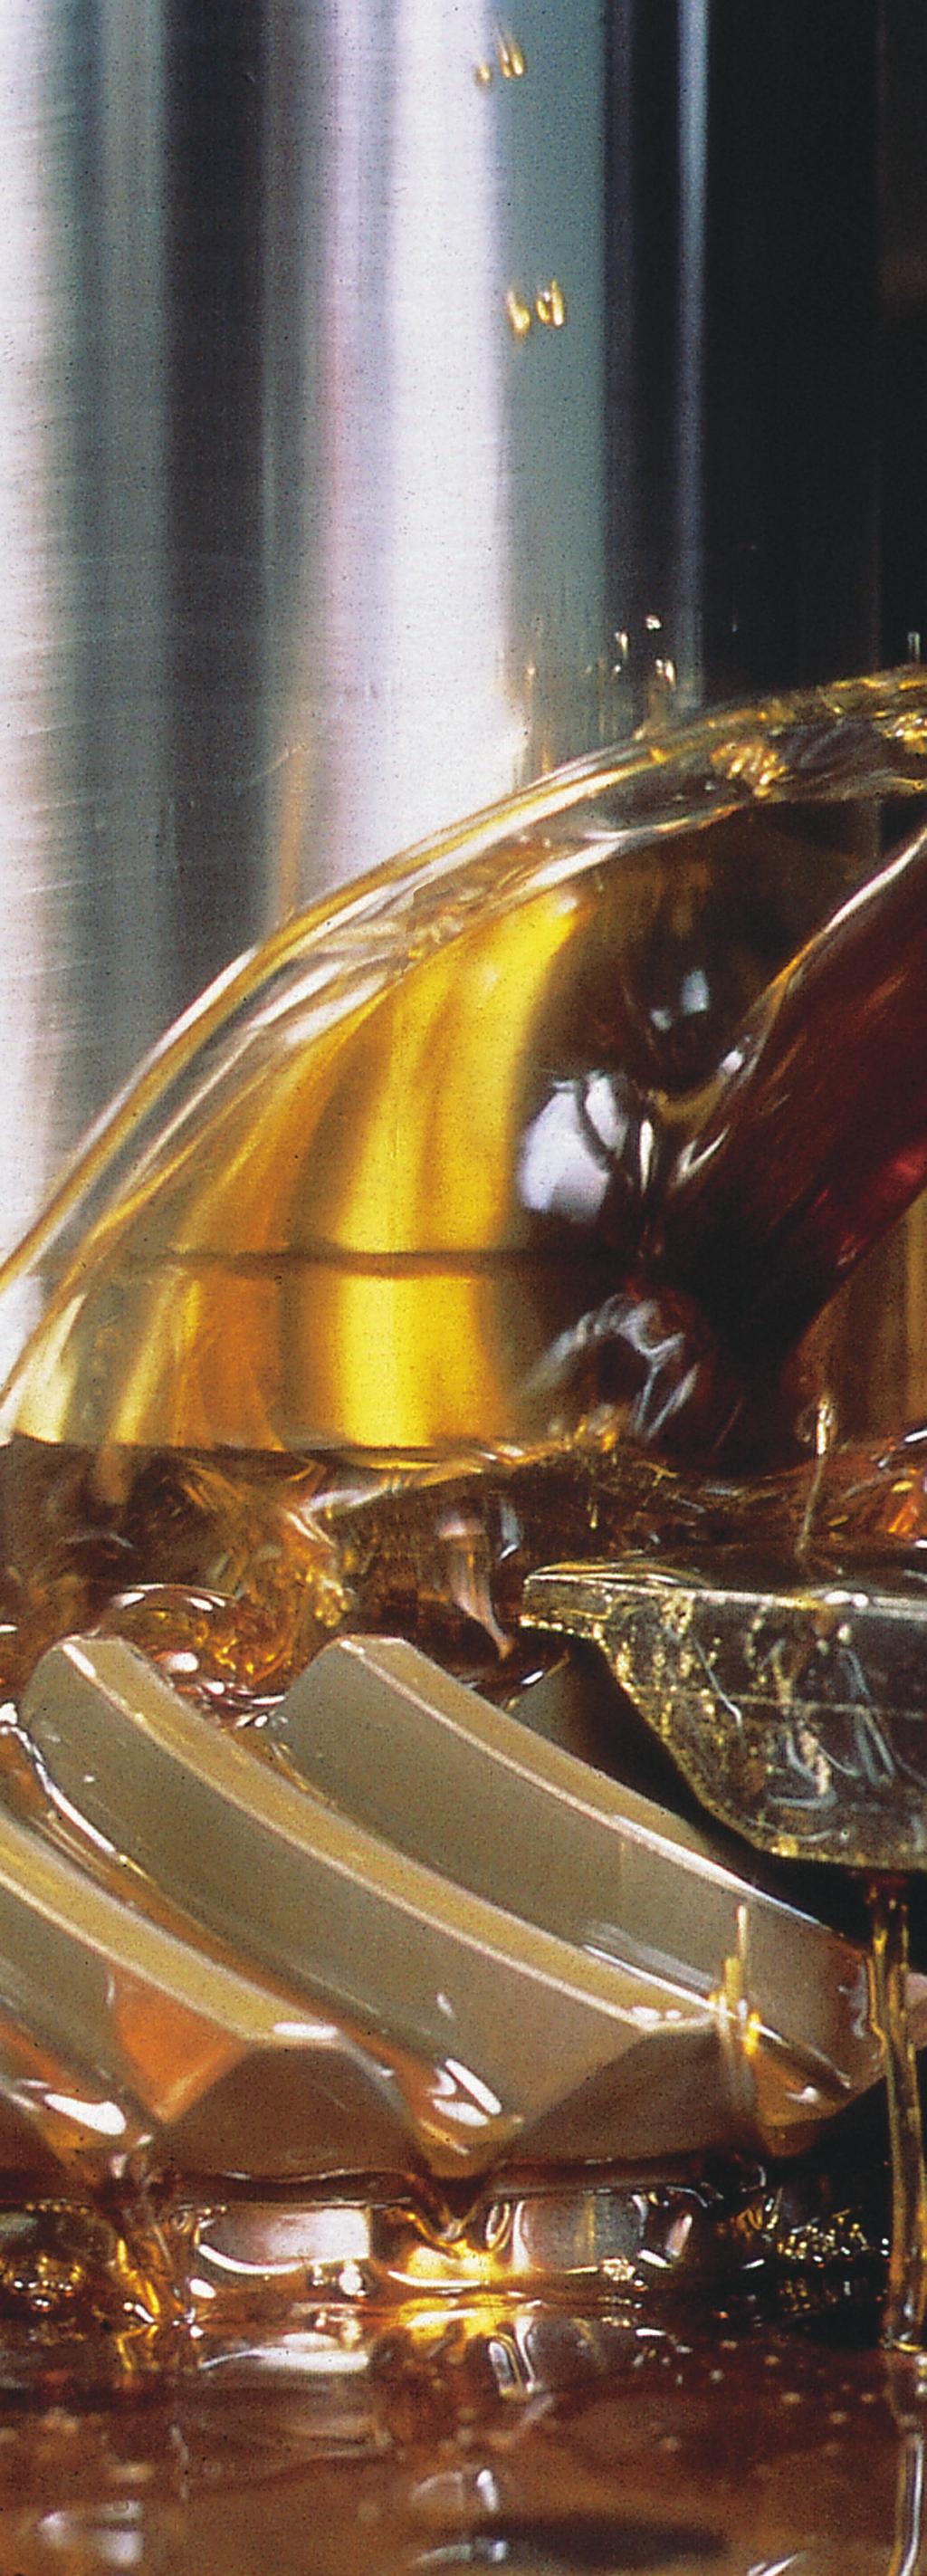 VALIKER GEAR EP ISO 150,220,320, 460 y 680 Son aceites de alto desempeño par lubricación de engranes Industriales de altas cargas.